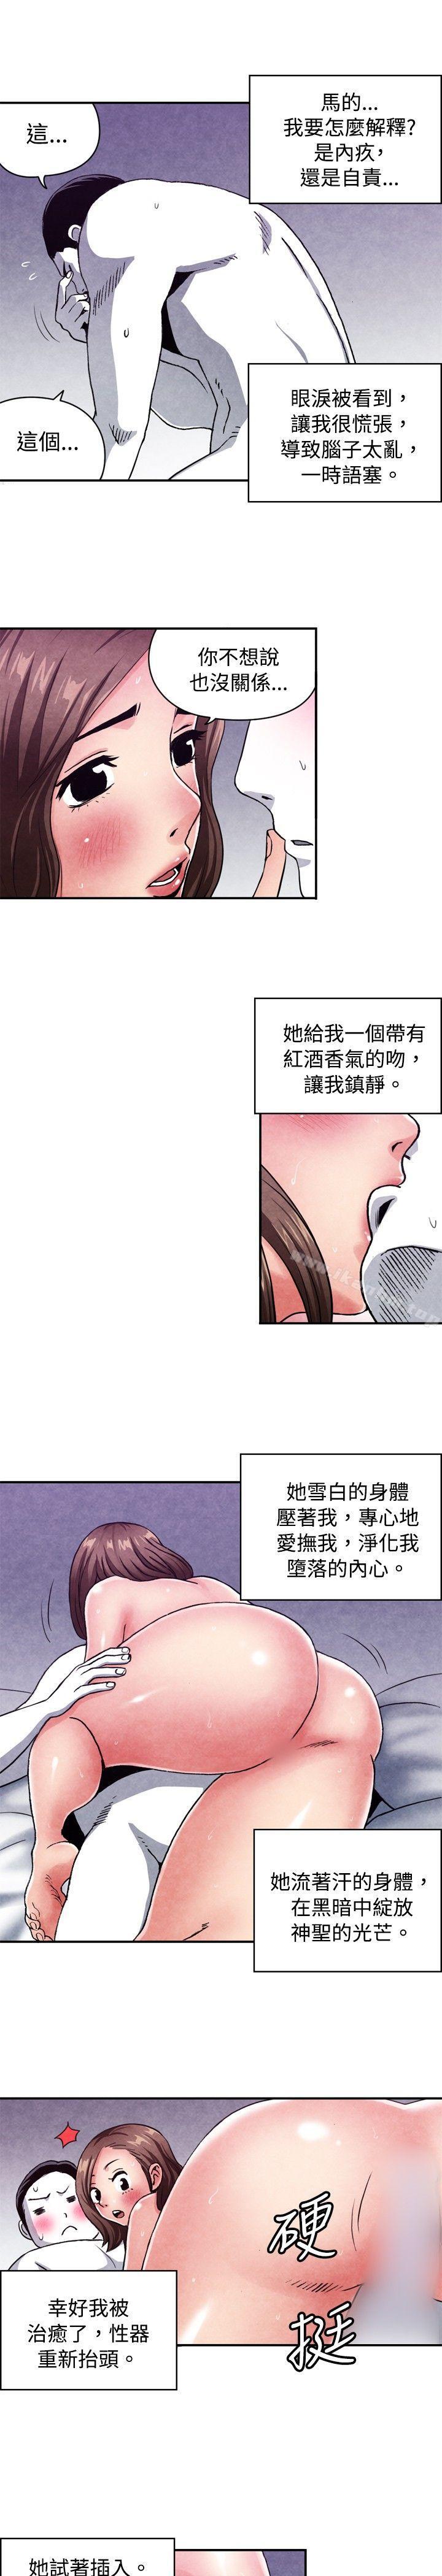 漫画韩国 生物學的女性攻略法   - 立即阅读 生物學的女性攻略法 CASE 08-2. 保險王和夫人第3漫画图片